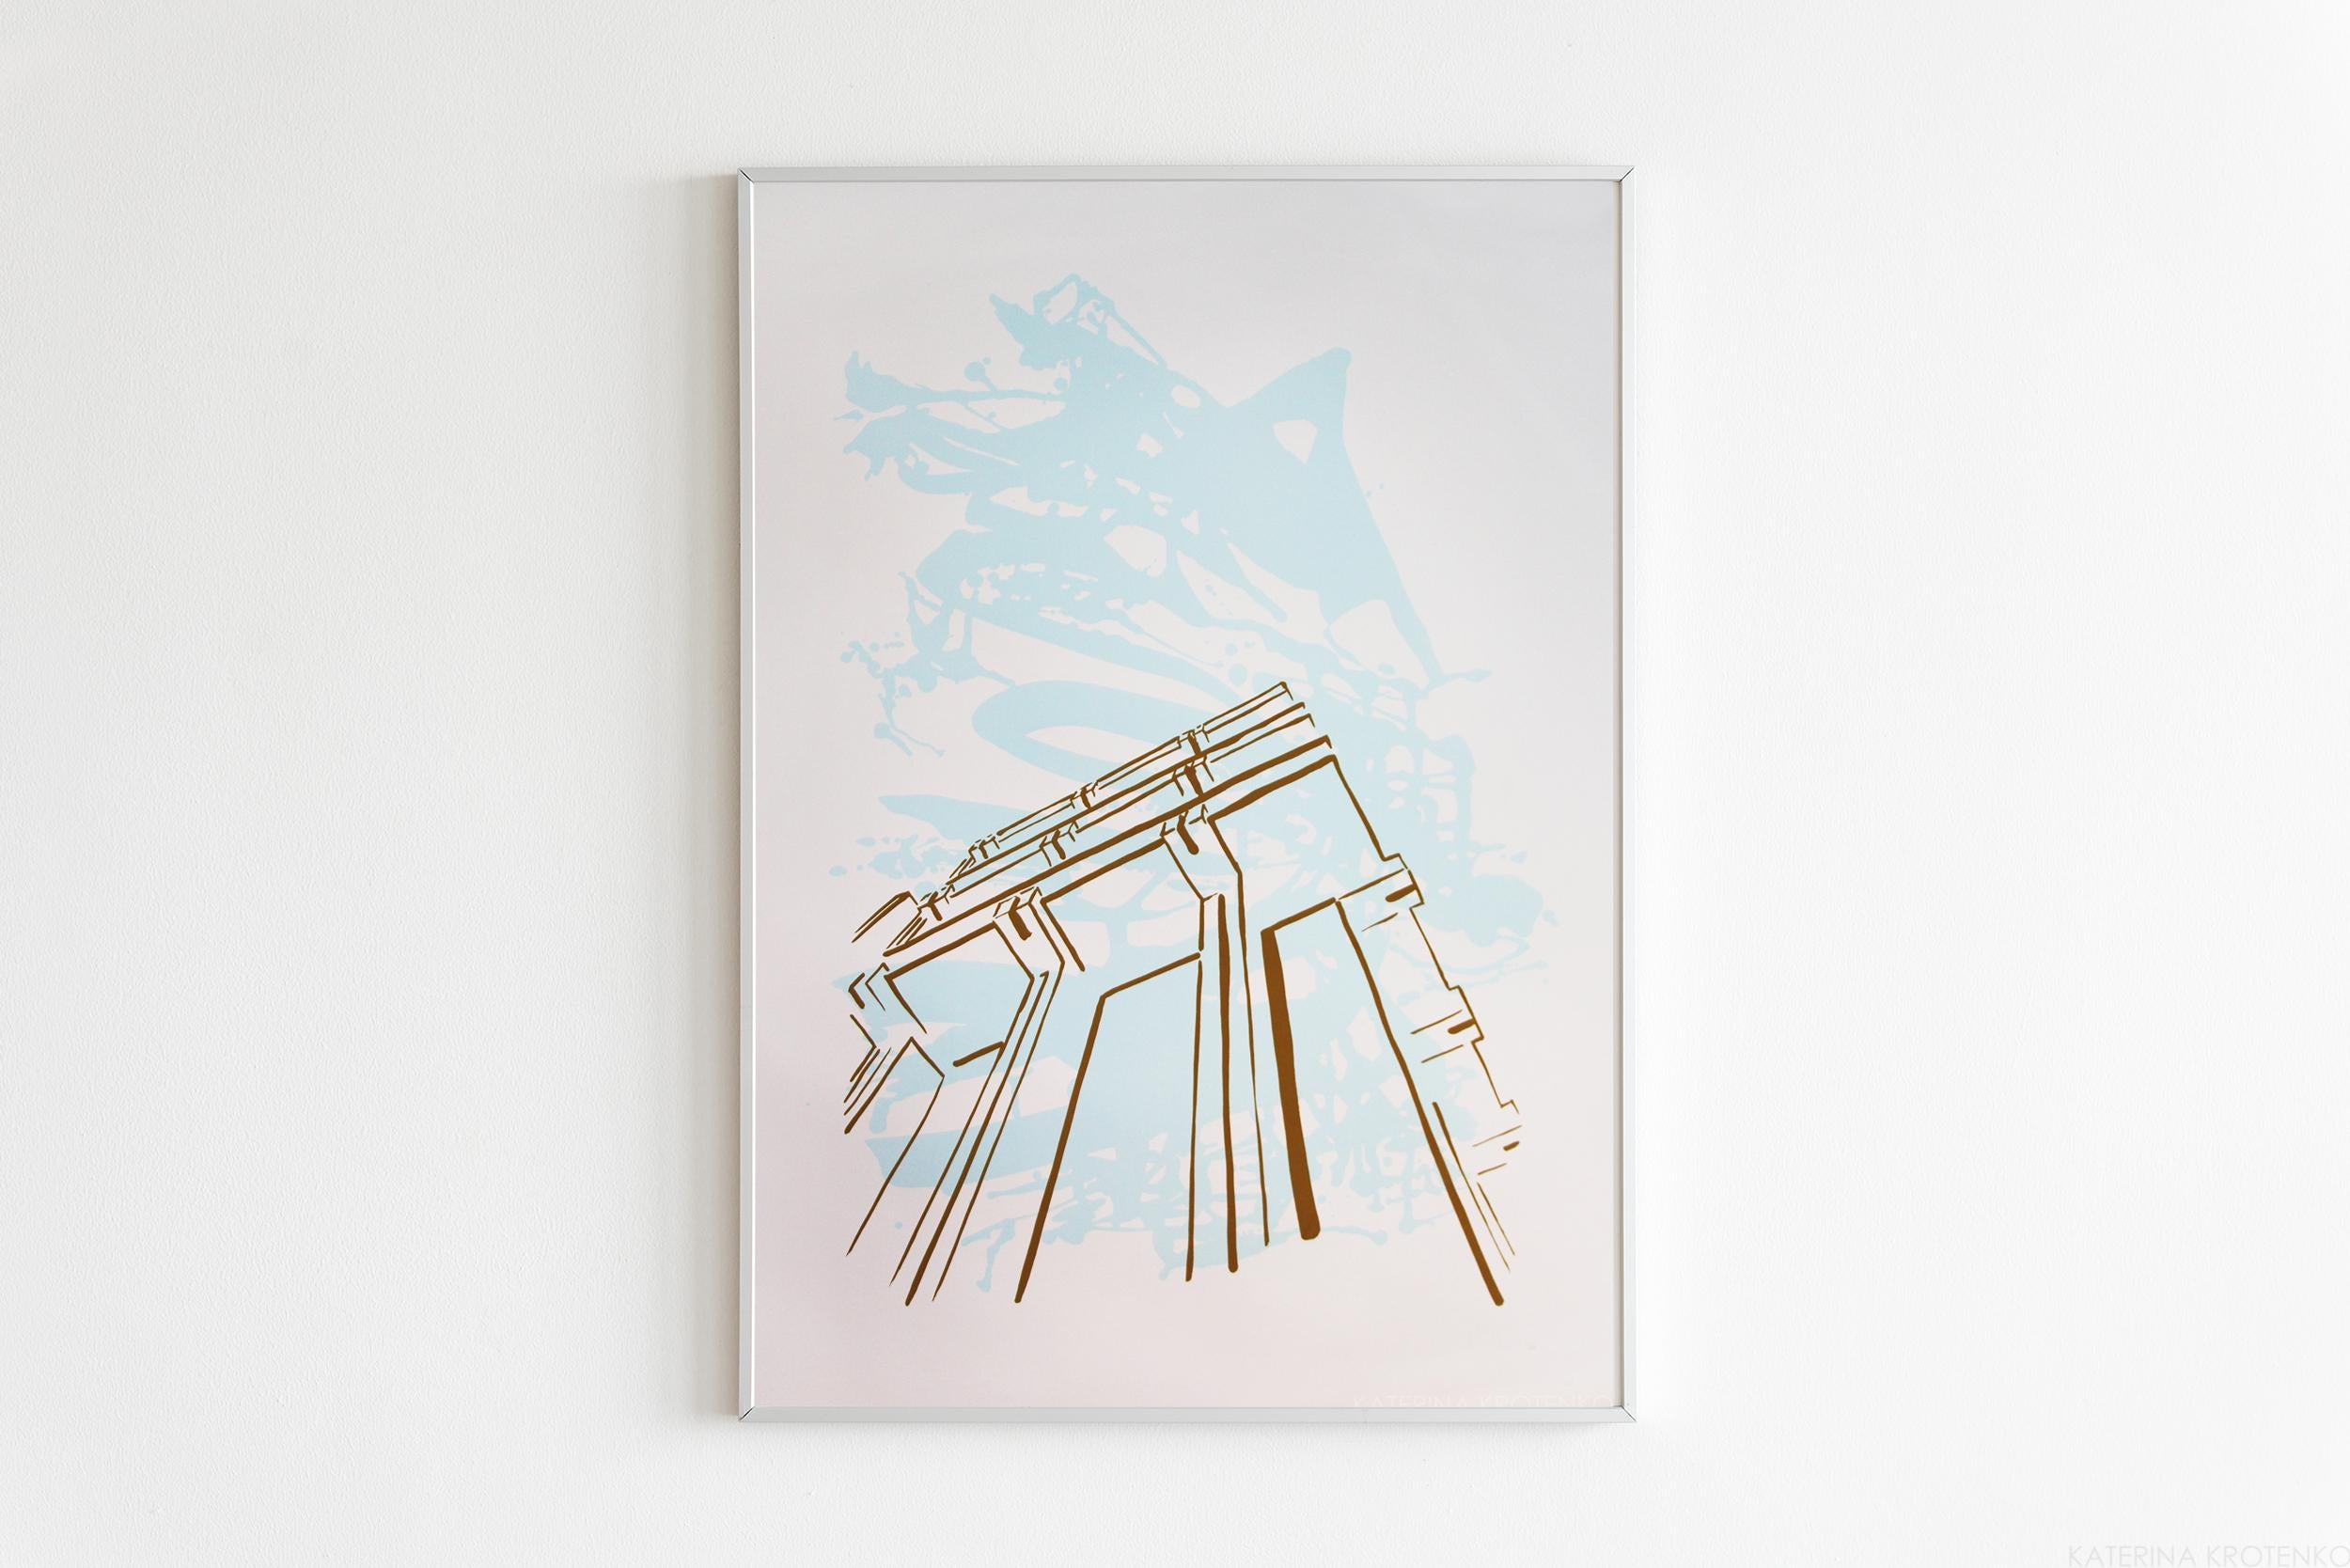 Abstract Print Katerina Krotenko - Des trésors invisibles # 6 sérigraphie architecturale